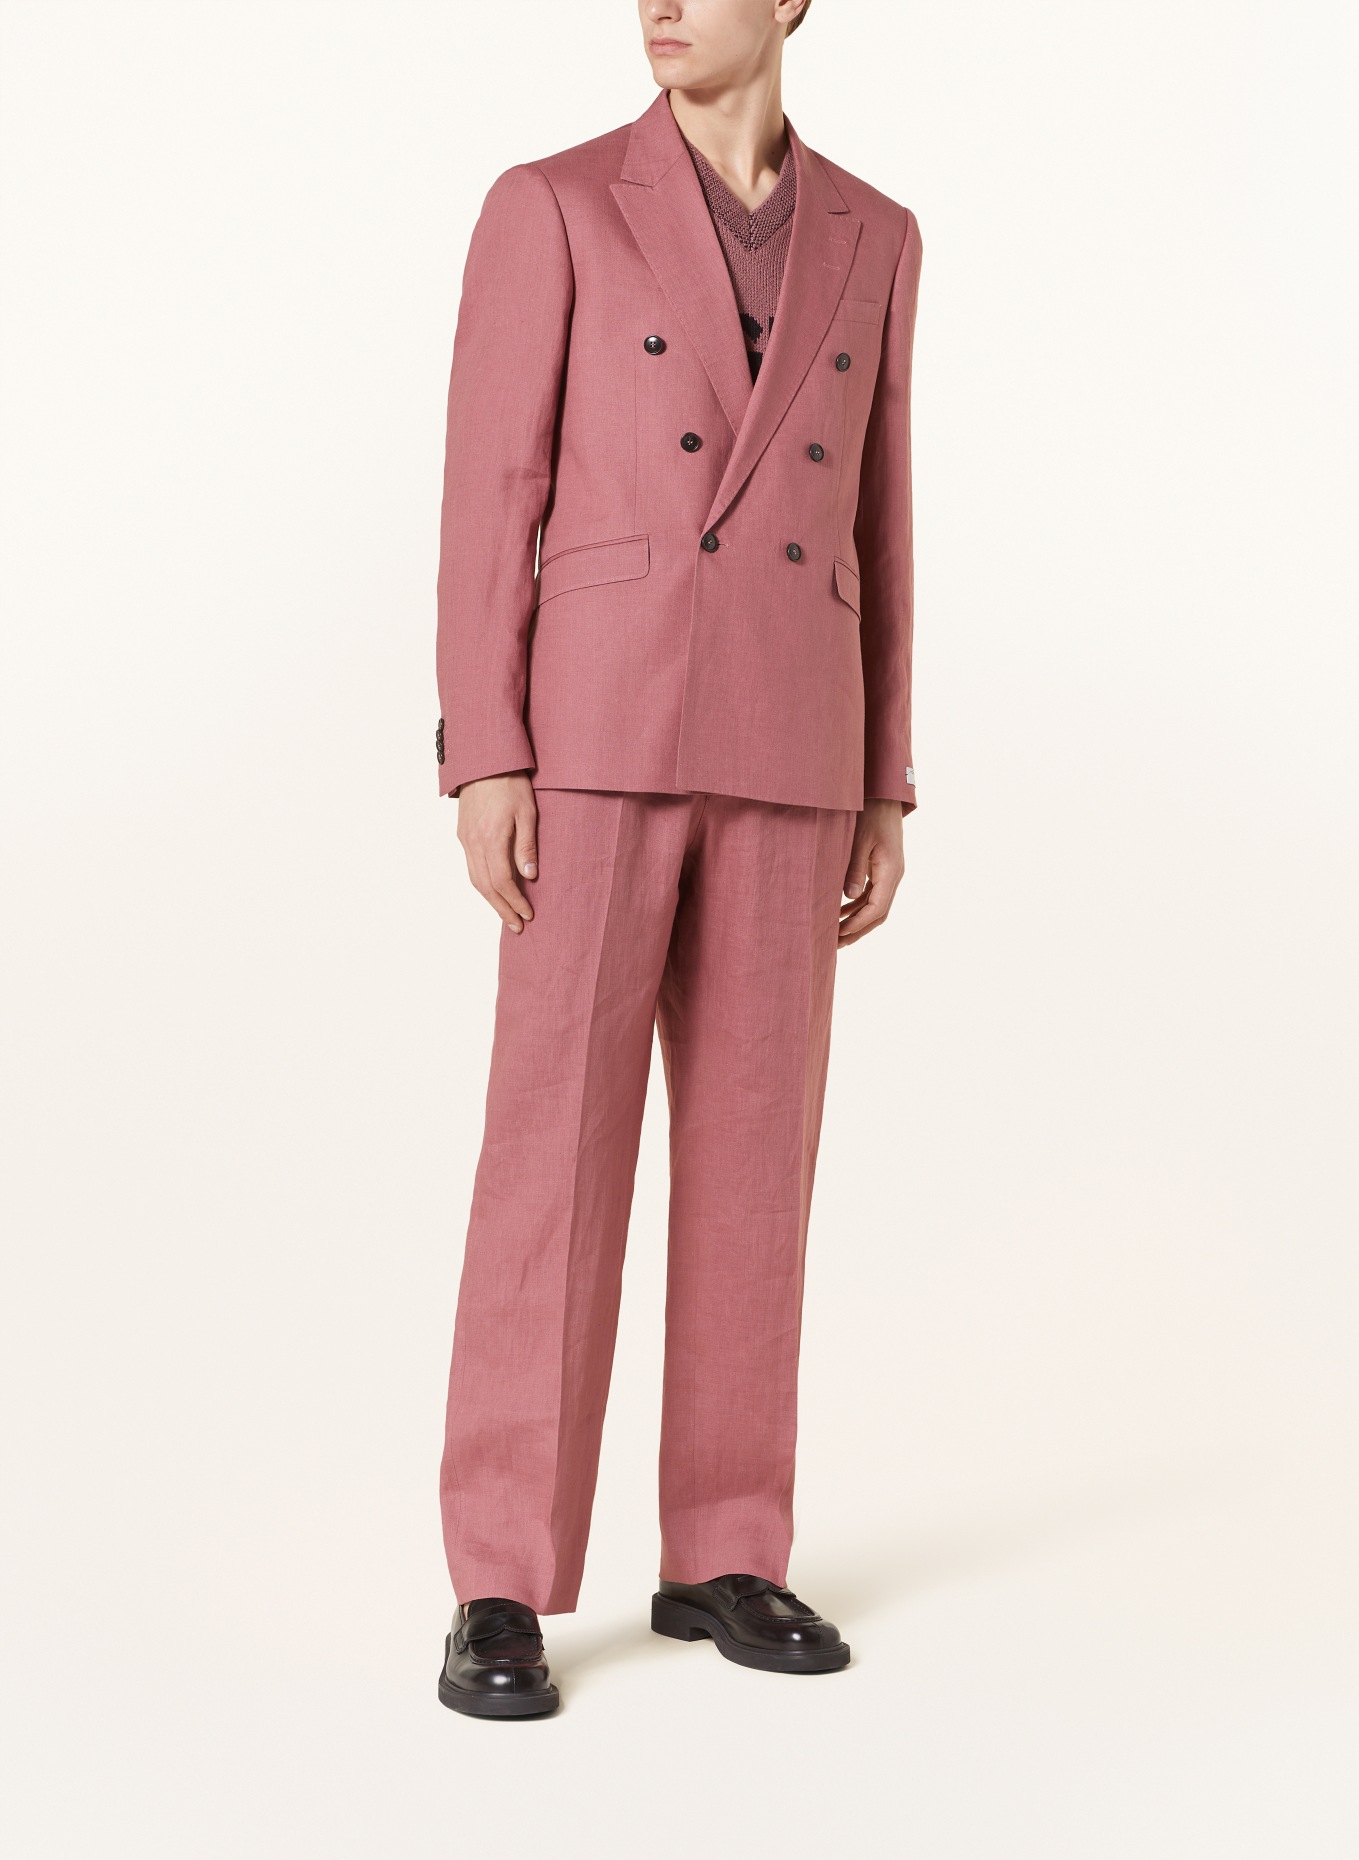 TIGER OF SWEDEN Suit jacket HELDIN slim fit in linen, Color: 1BS Rose Brown (Image 2)